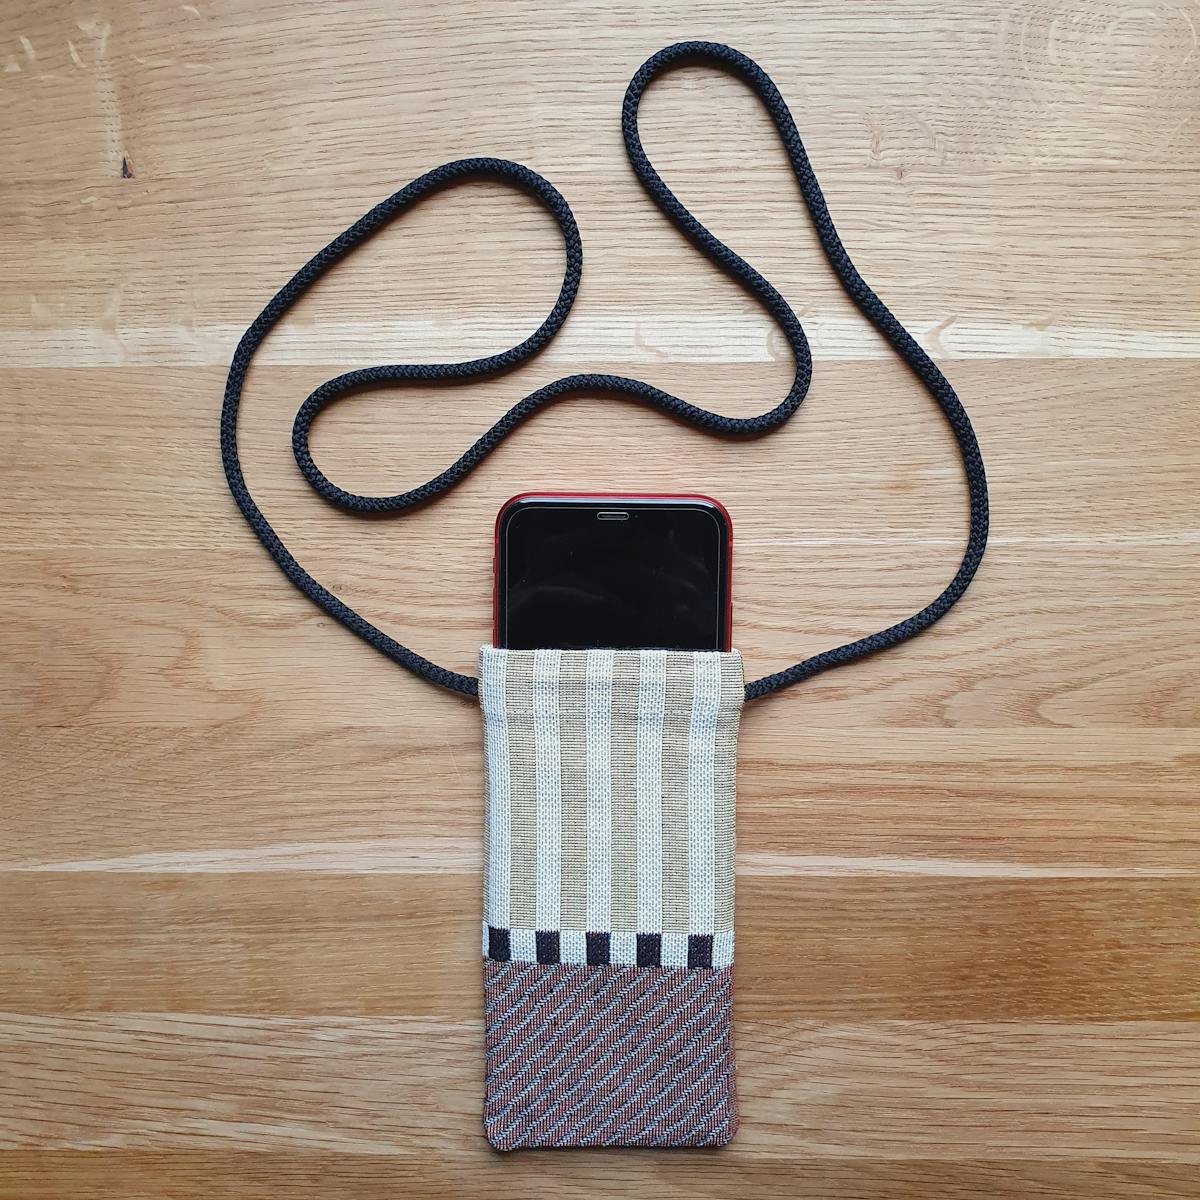  housse pour iPhone faite à la main avec du tissu rayé et un cordon bandoulière avec un téléphone à l'intérieur